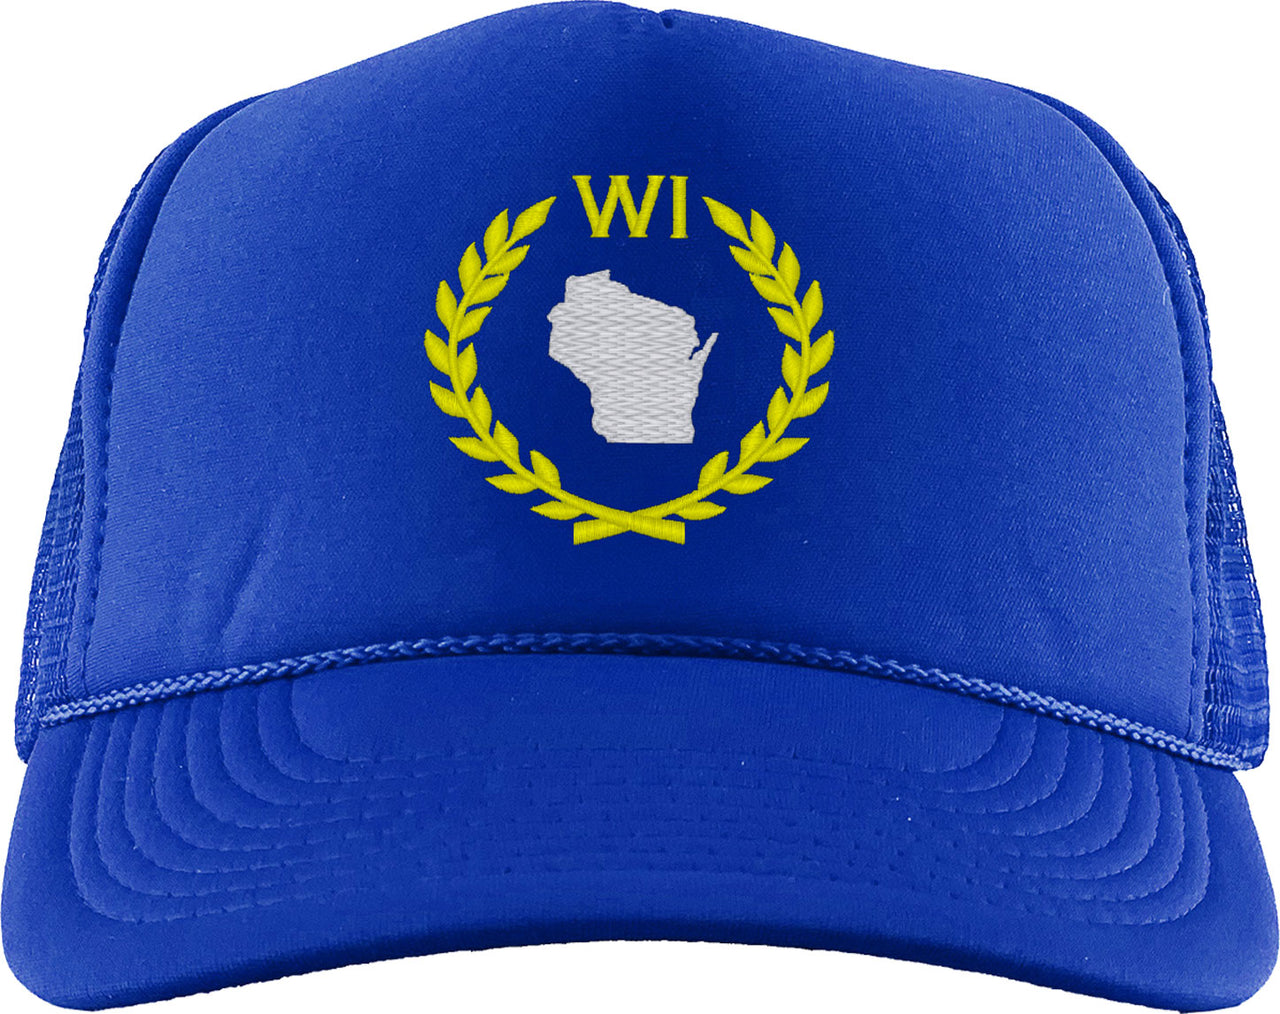 Wisconsin State Foam Trucker Hat